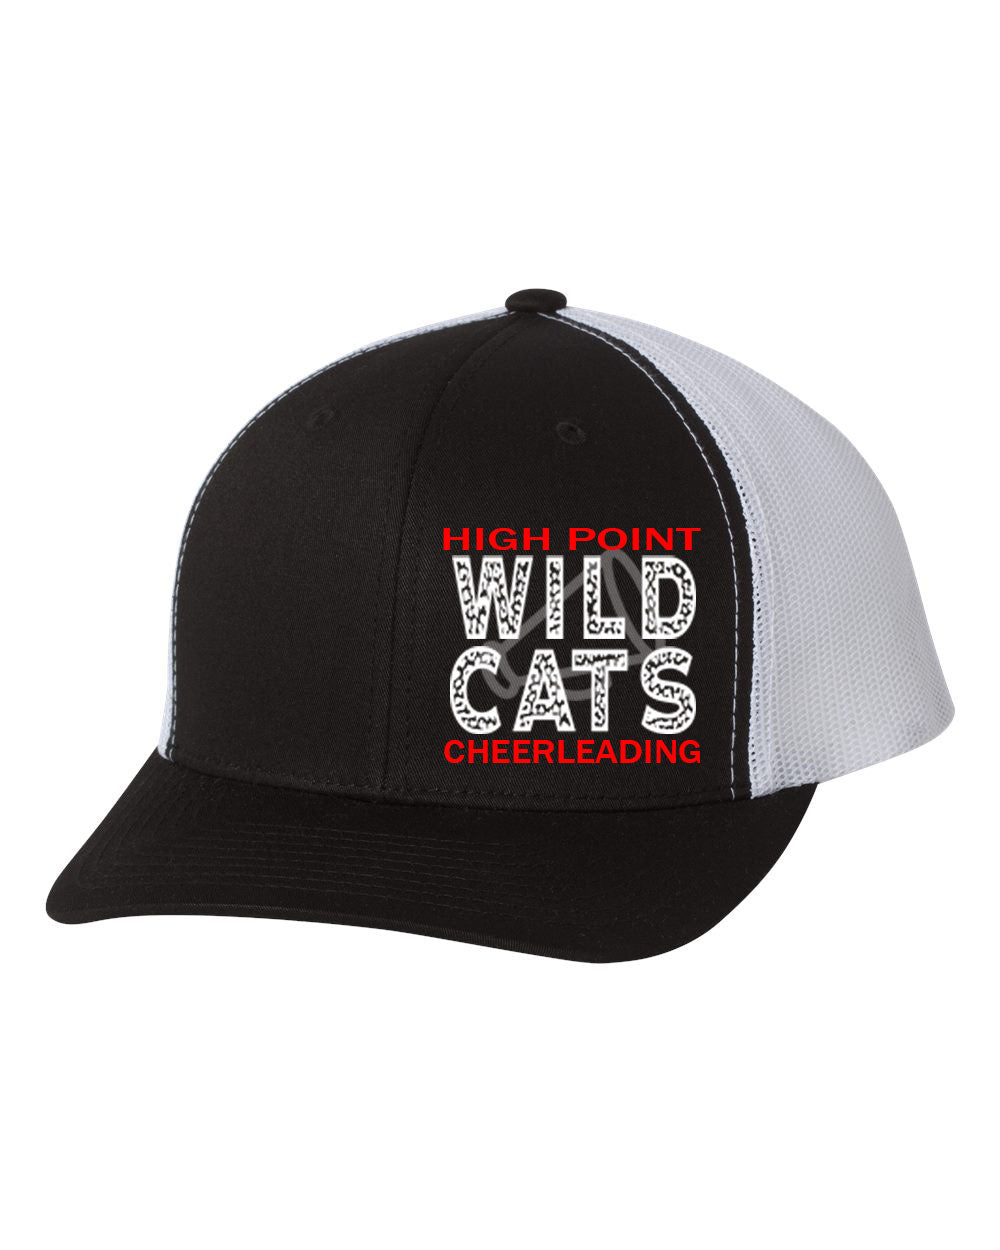 Wildcats Cheer design 1 Trucker Hat